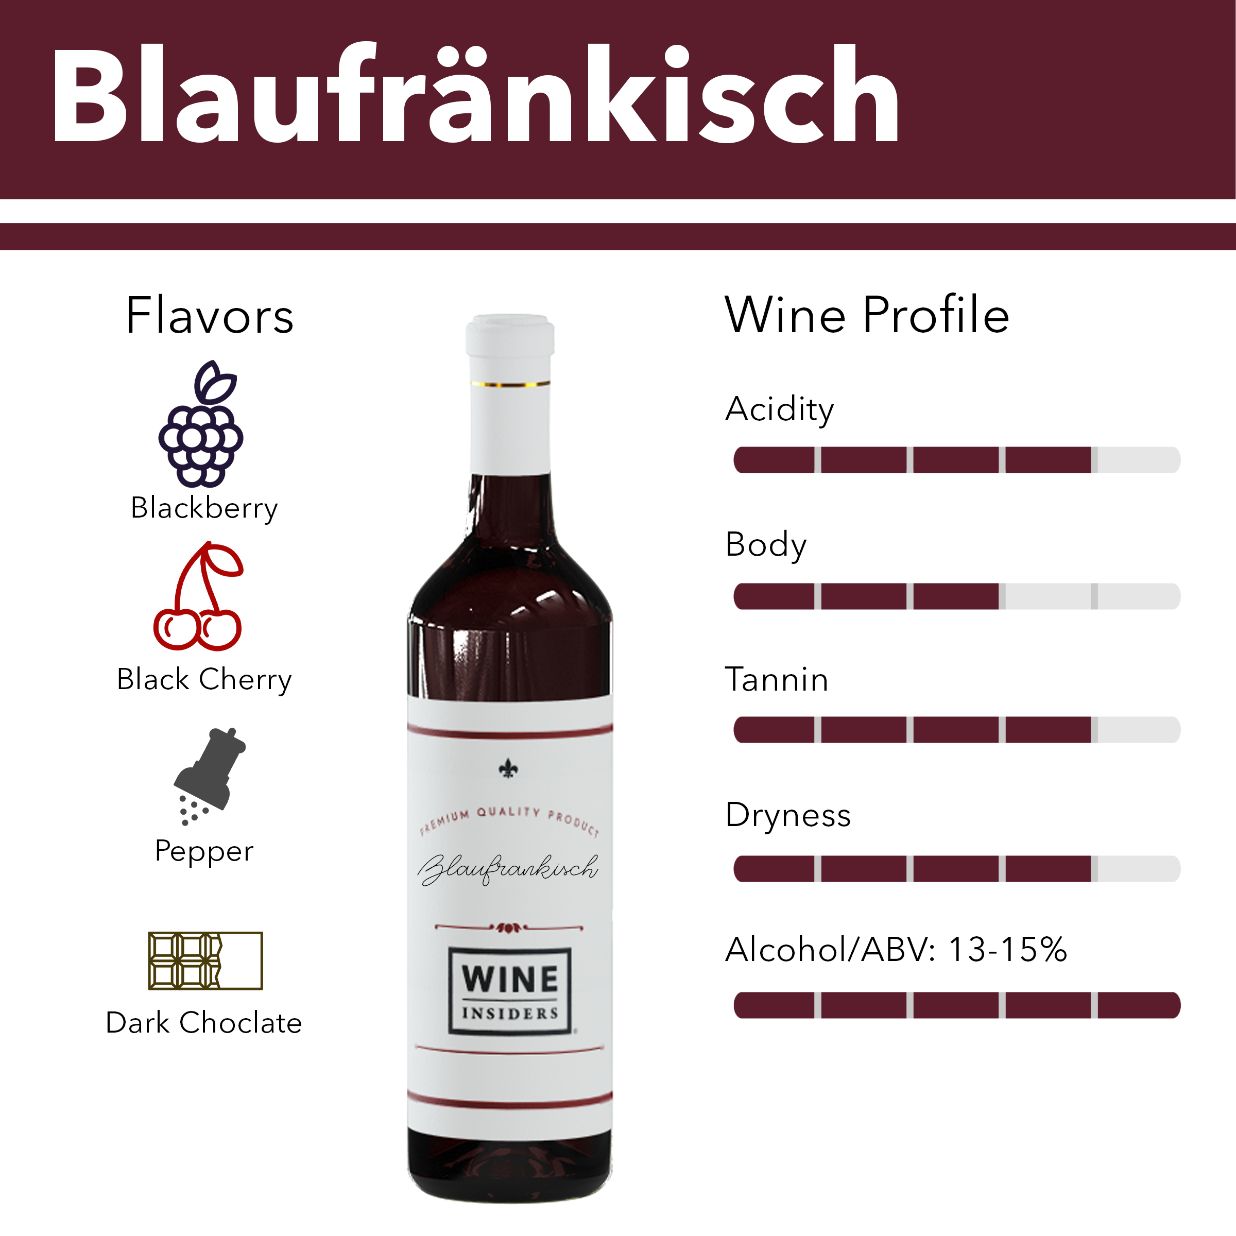 Blaufrankisch wine flavor profile.